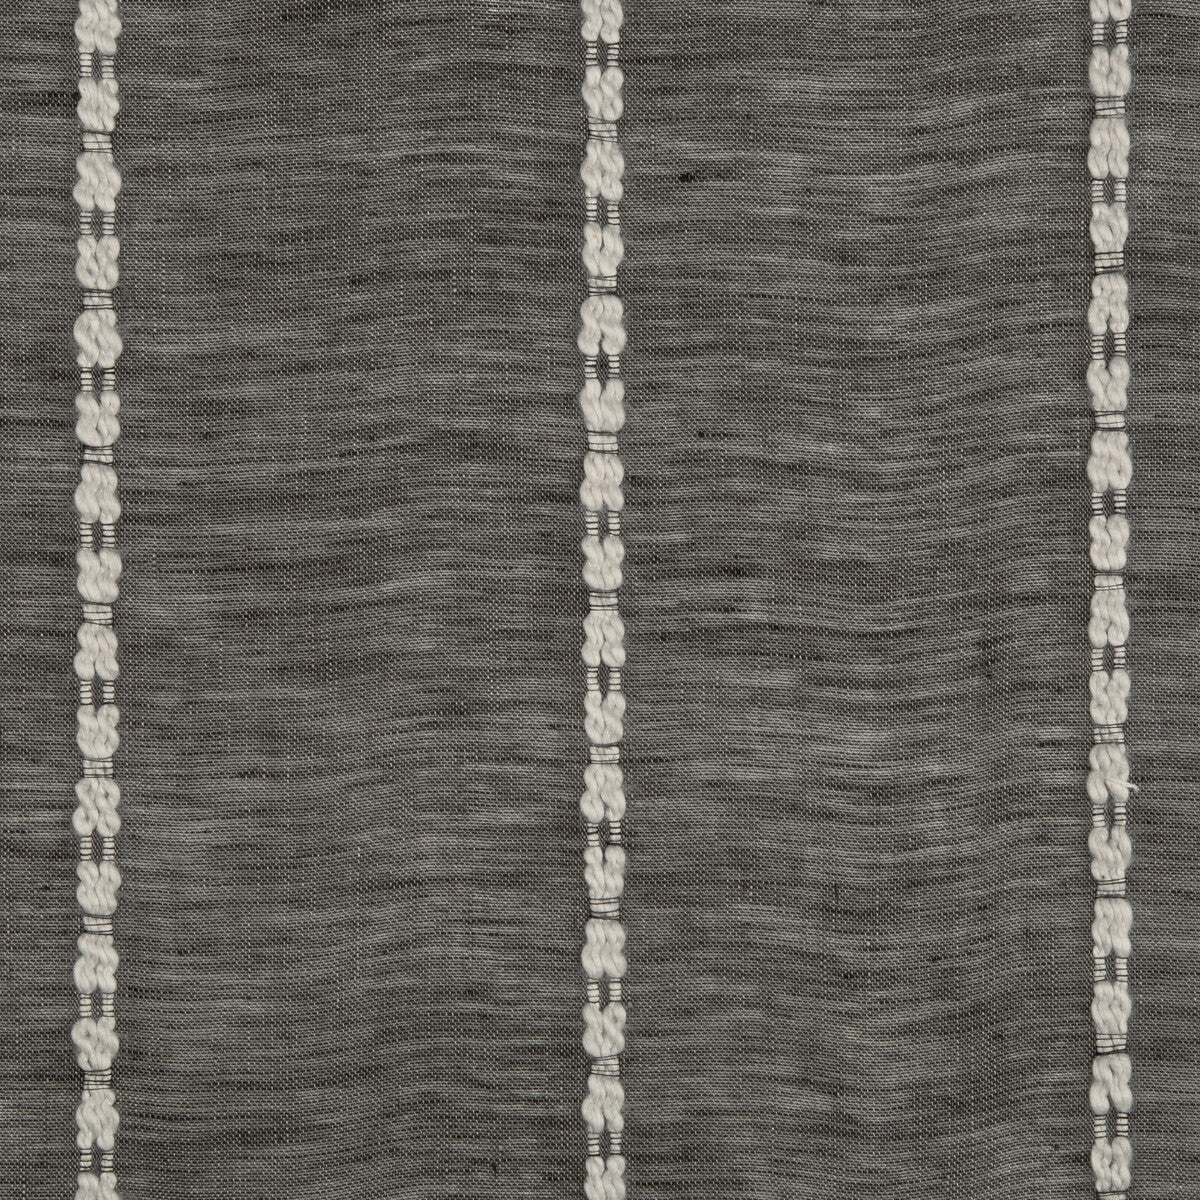 Kravet Design fabric in 4578-21 color - pattern 4578.21.0 - by Kravet Design